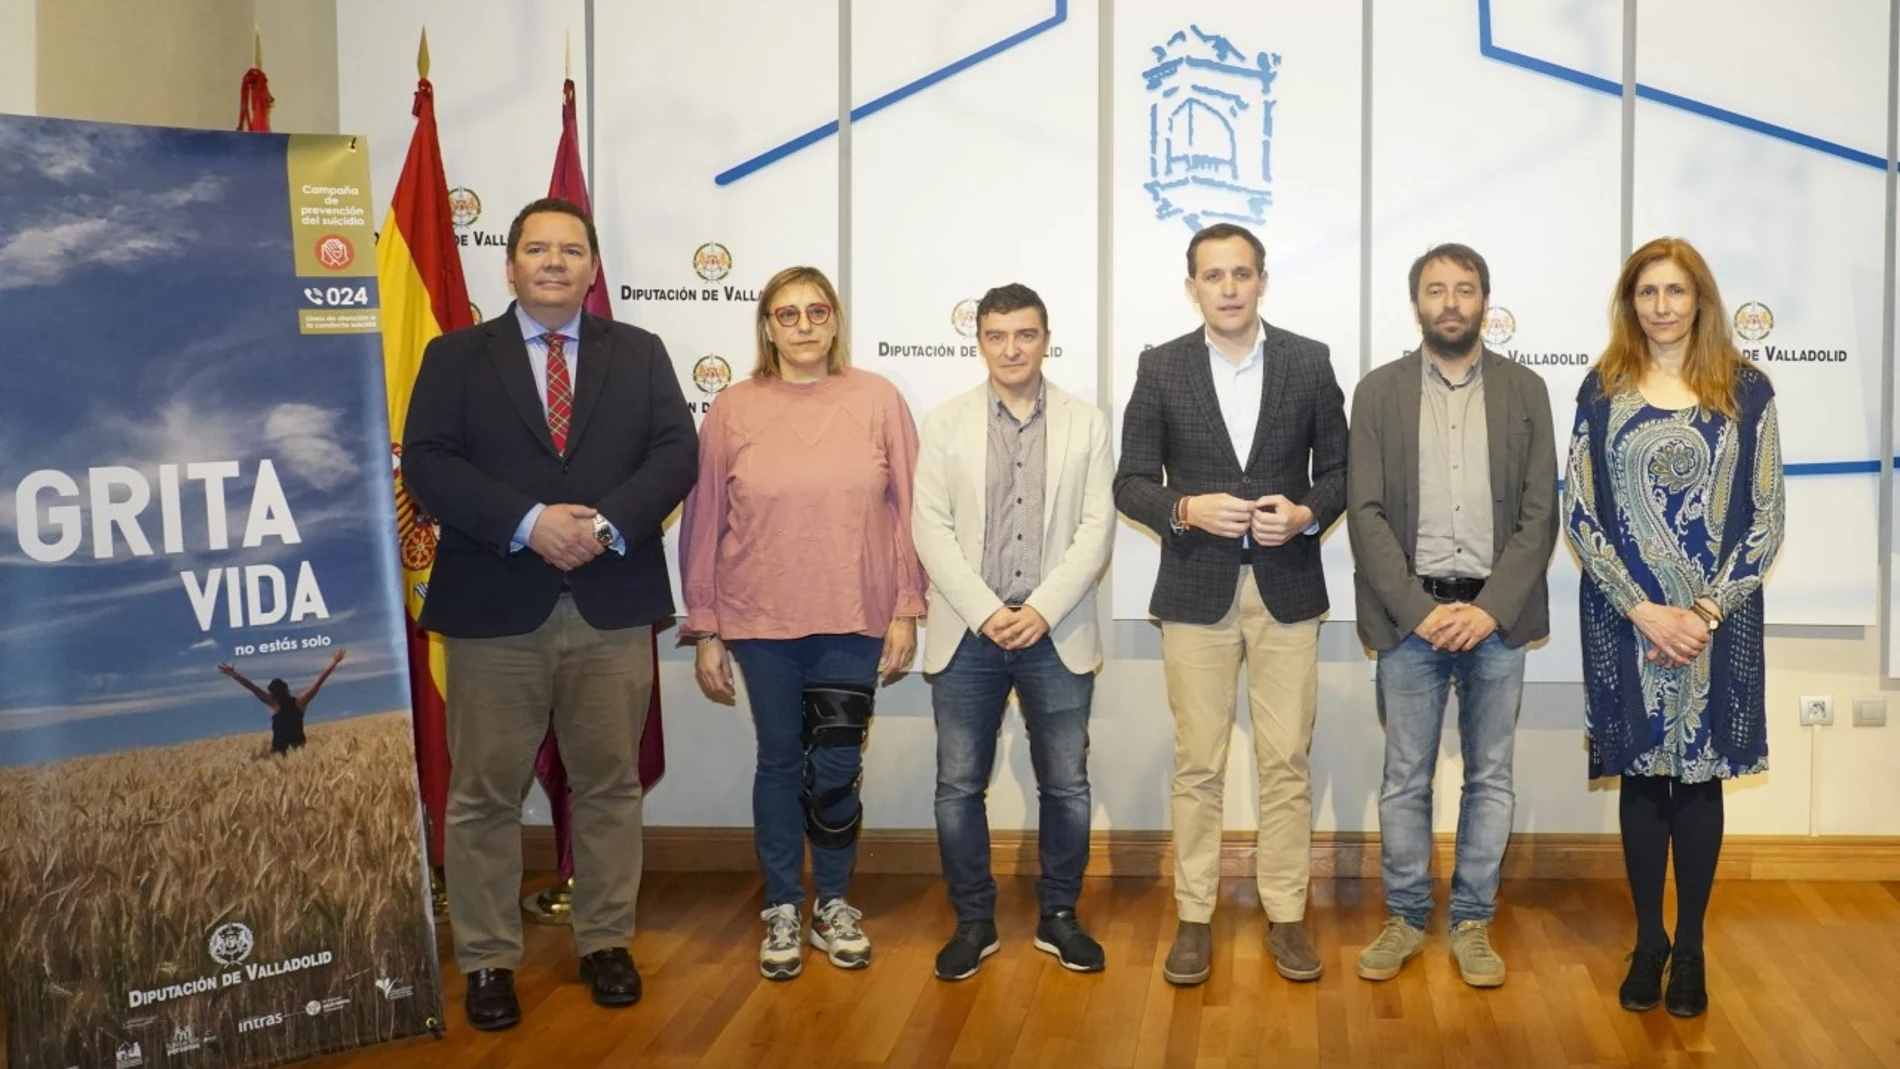 El presidente de la Diputación de Valladolid, Conrado Íscar, presenta la campaña junto a los responsables de las institucionies